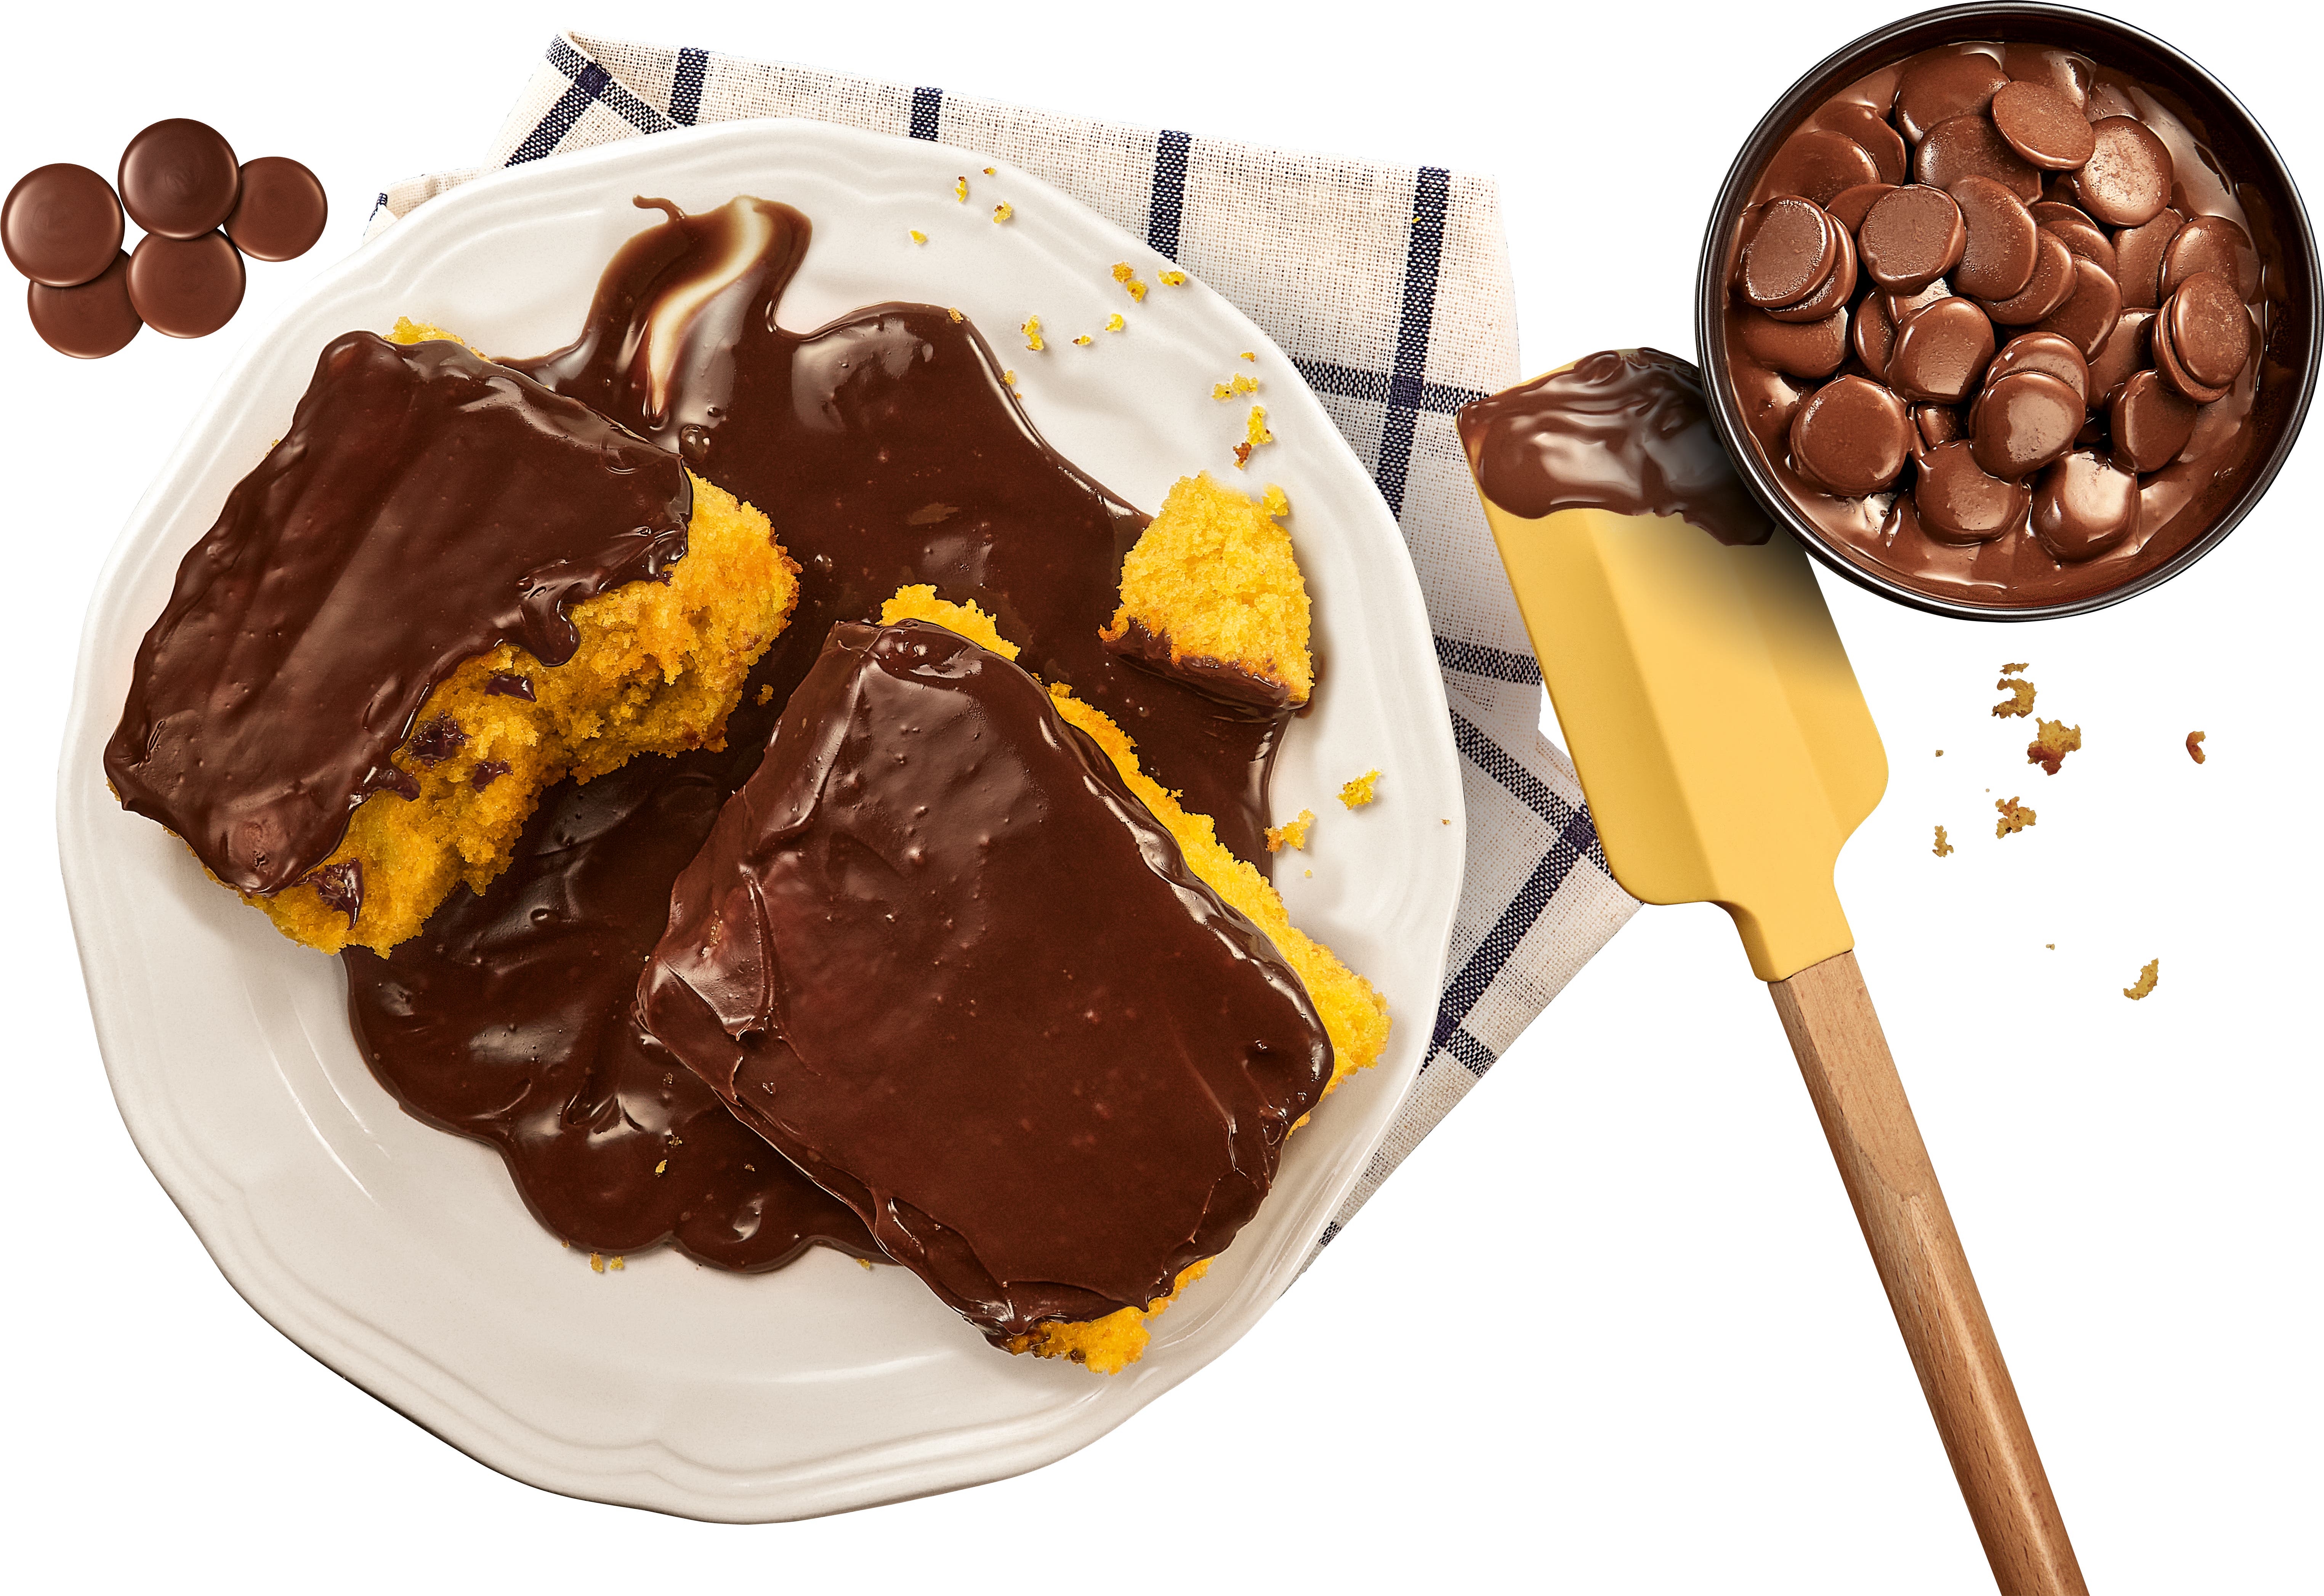 Dois pedaços de bolo de cenoura com cobertura de chocolate em um prato branco, e uma tigela de gotas de chocolate HERSHEY’S.